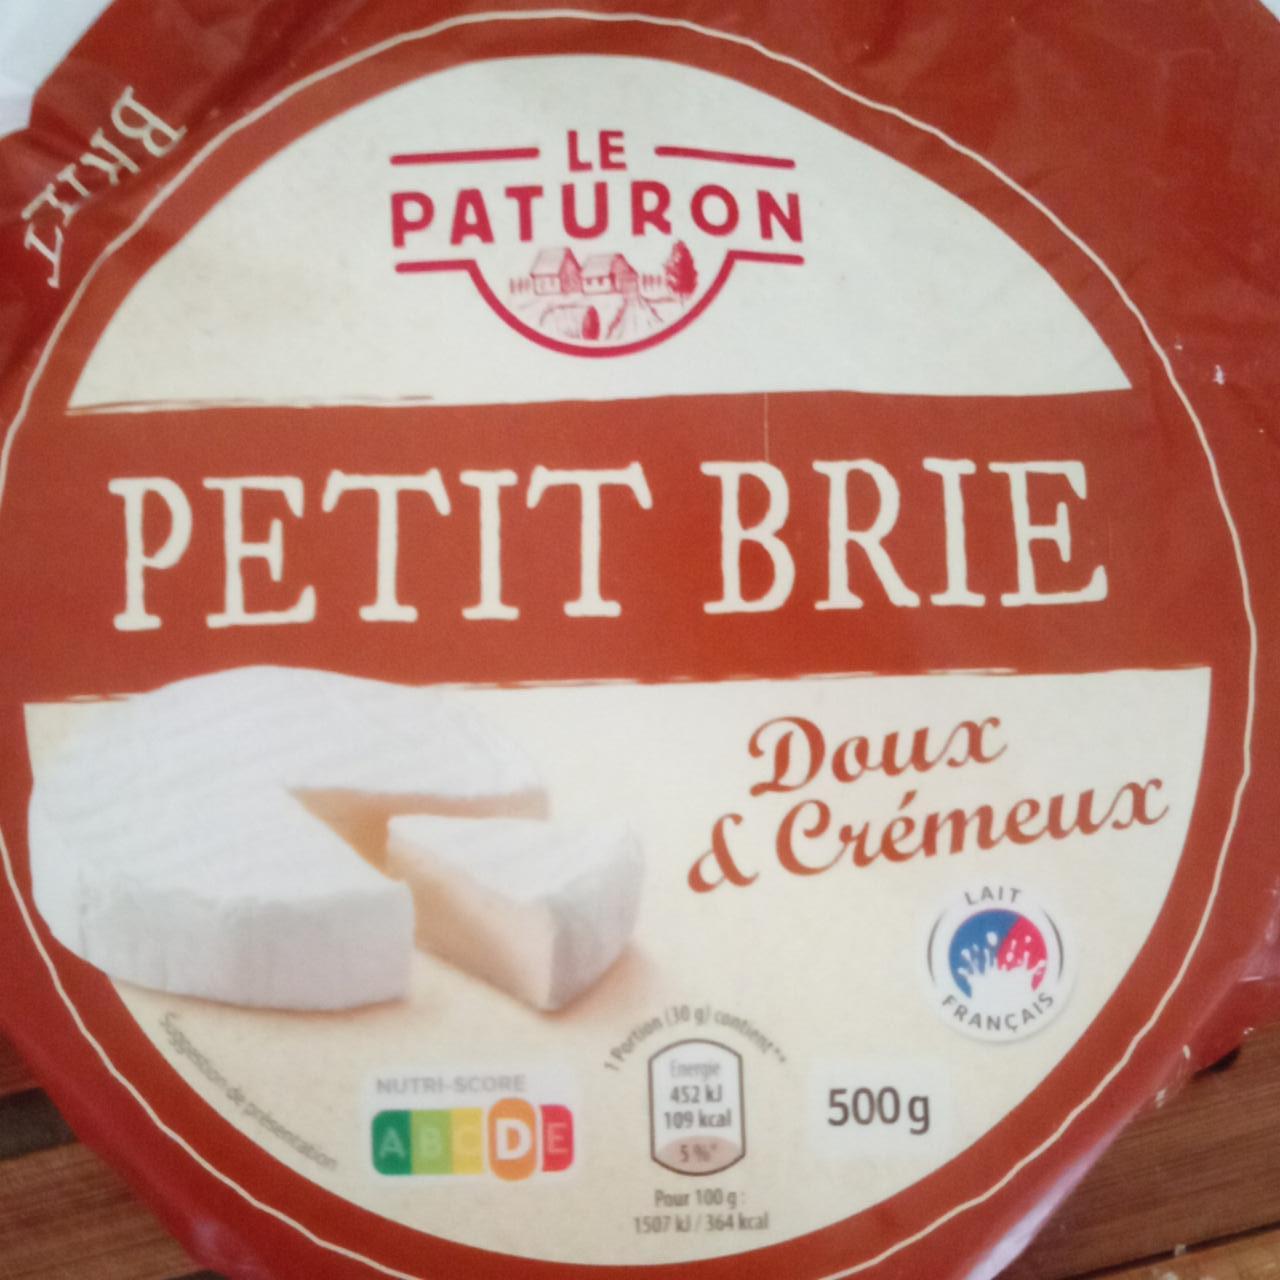 Zdjęcia - Petit Brie le paturon